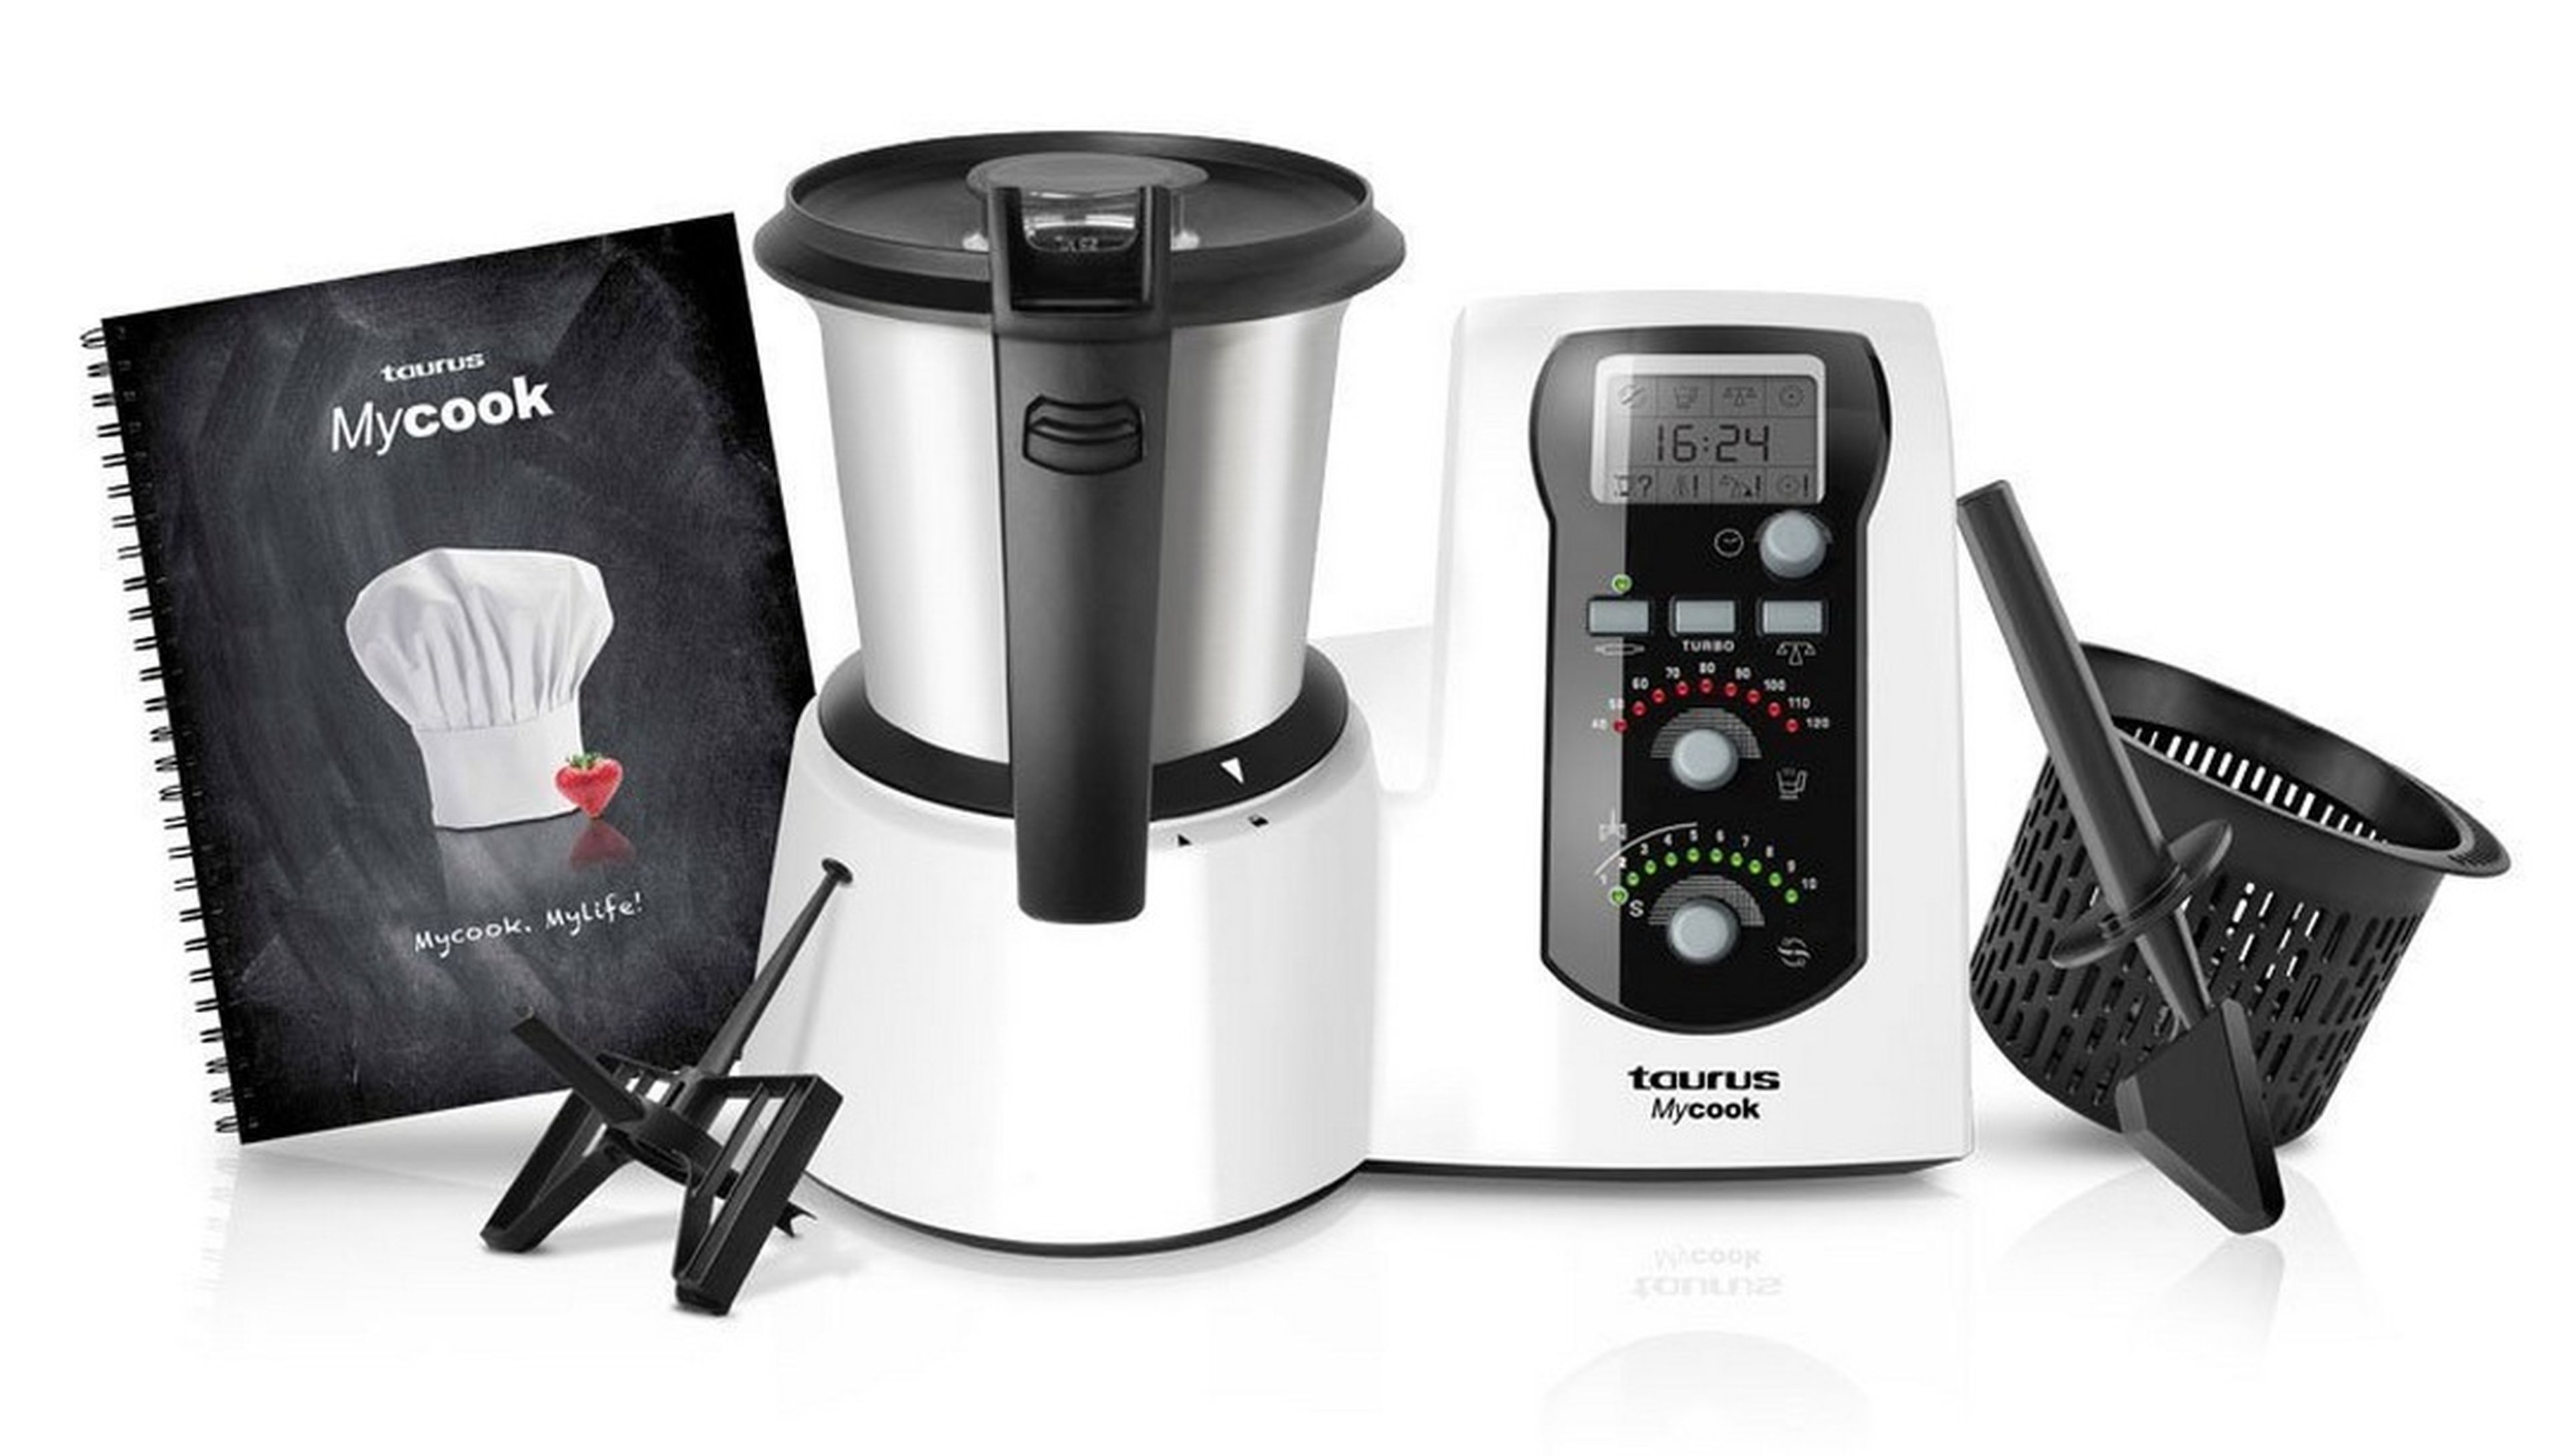 El robot de cocina Taurus MyCook Easy con 360 euros de descuento en Amazon, precio mínimo